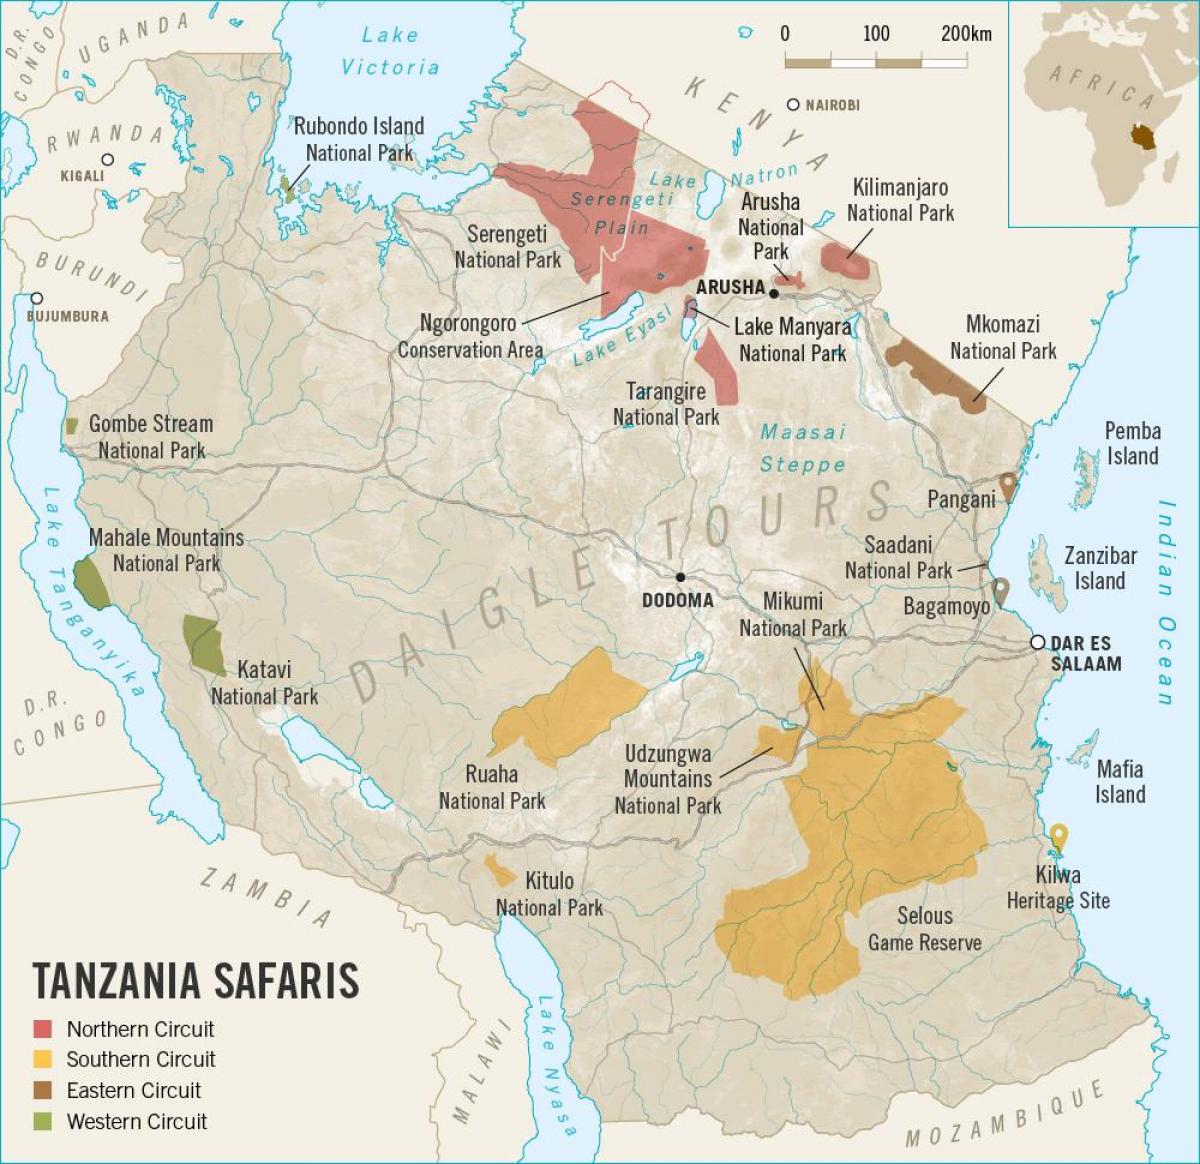 Mapa da tanzânia safari 